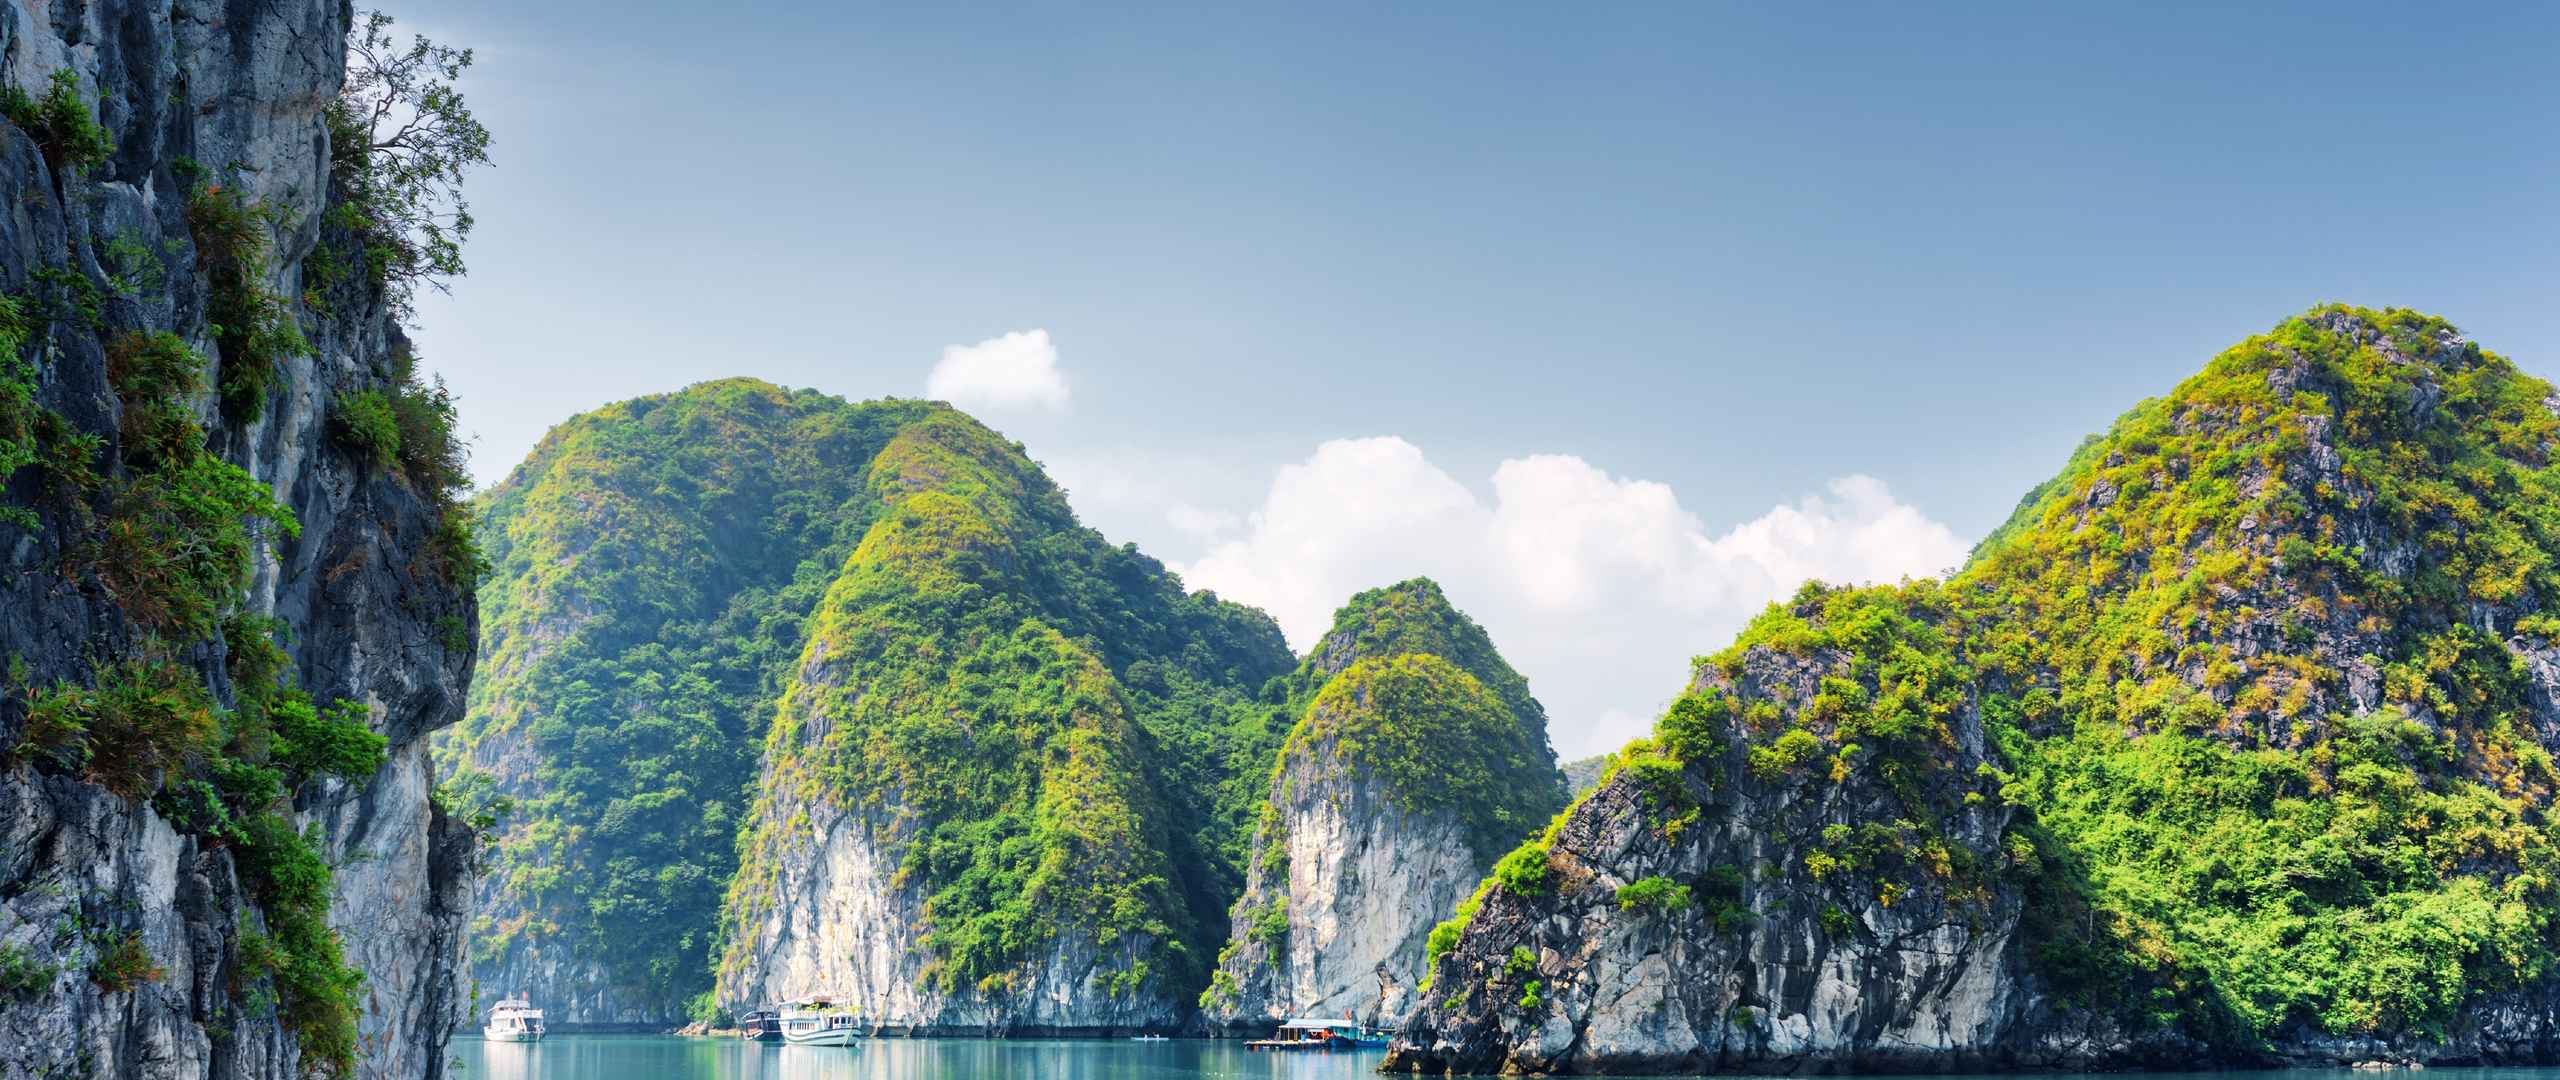 越南下龙湾大海岩石风景5K壁纸